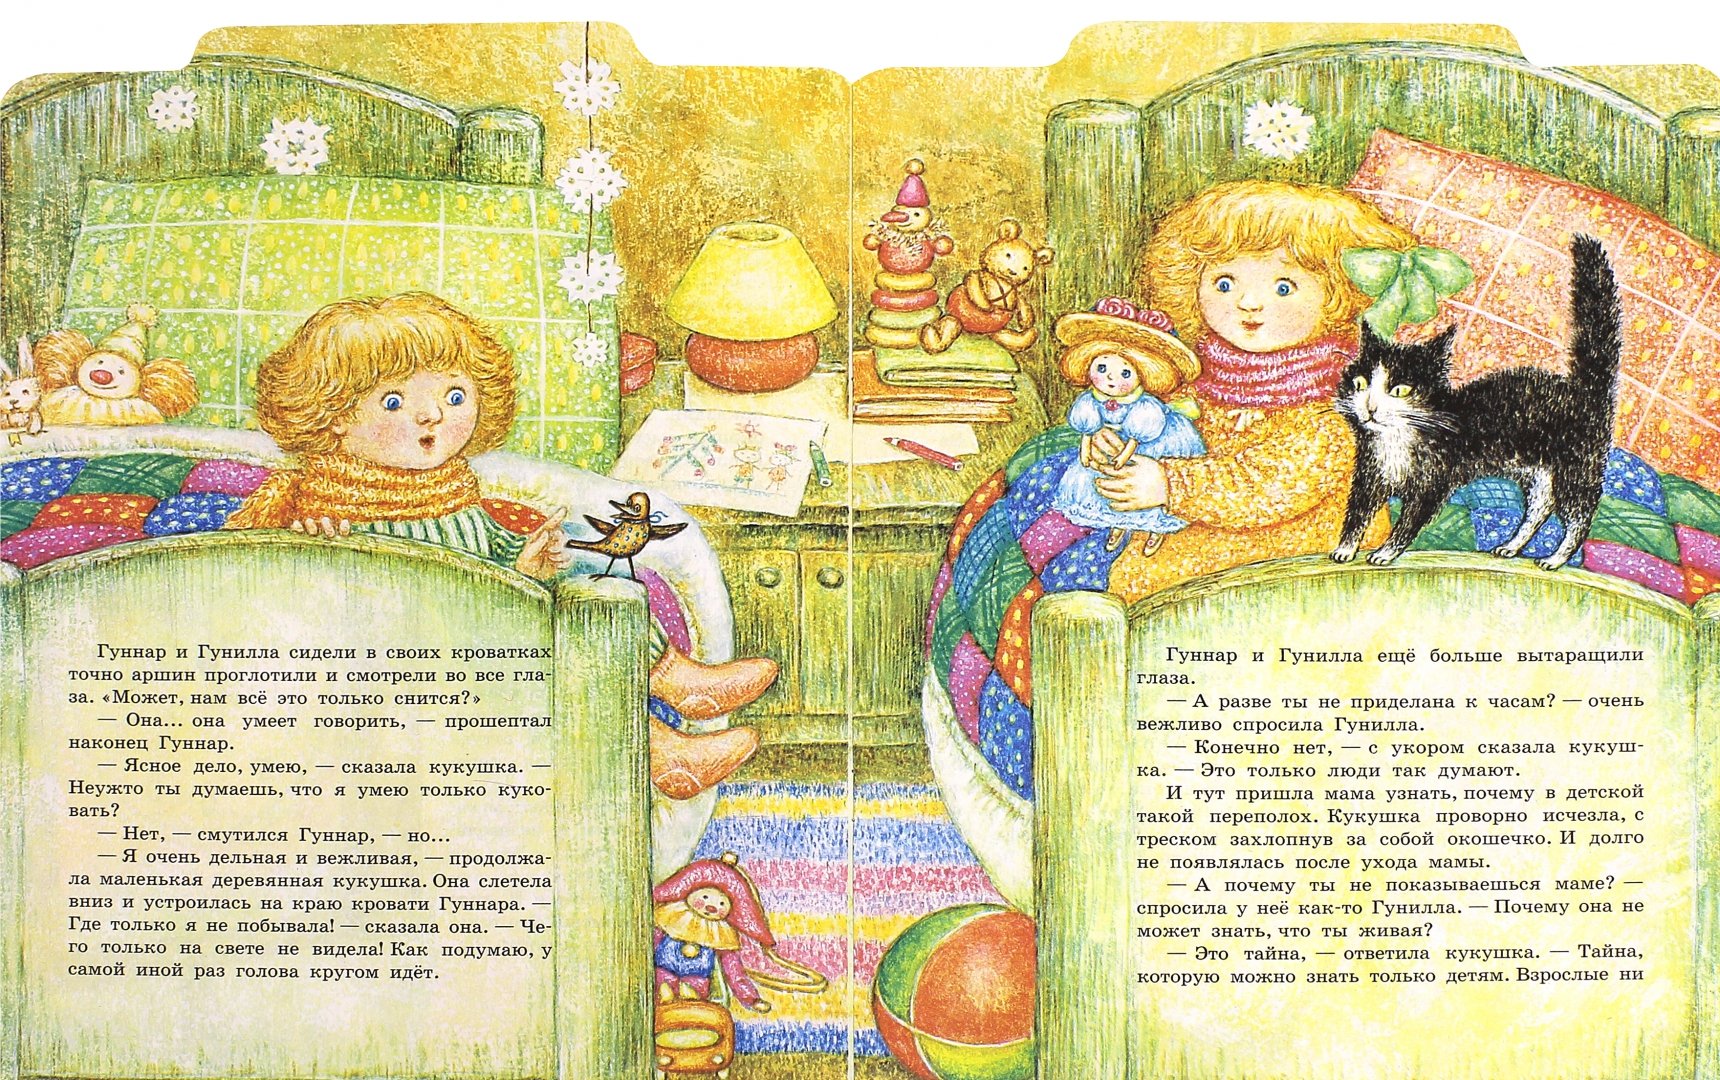 Иллюстрация 1 из 27 для Веселая кукушка - Астрид Линдгрен | Лабиринт - книги. Источник: Лабиринт